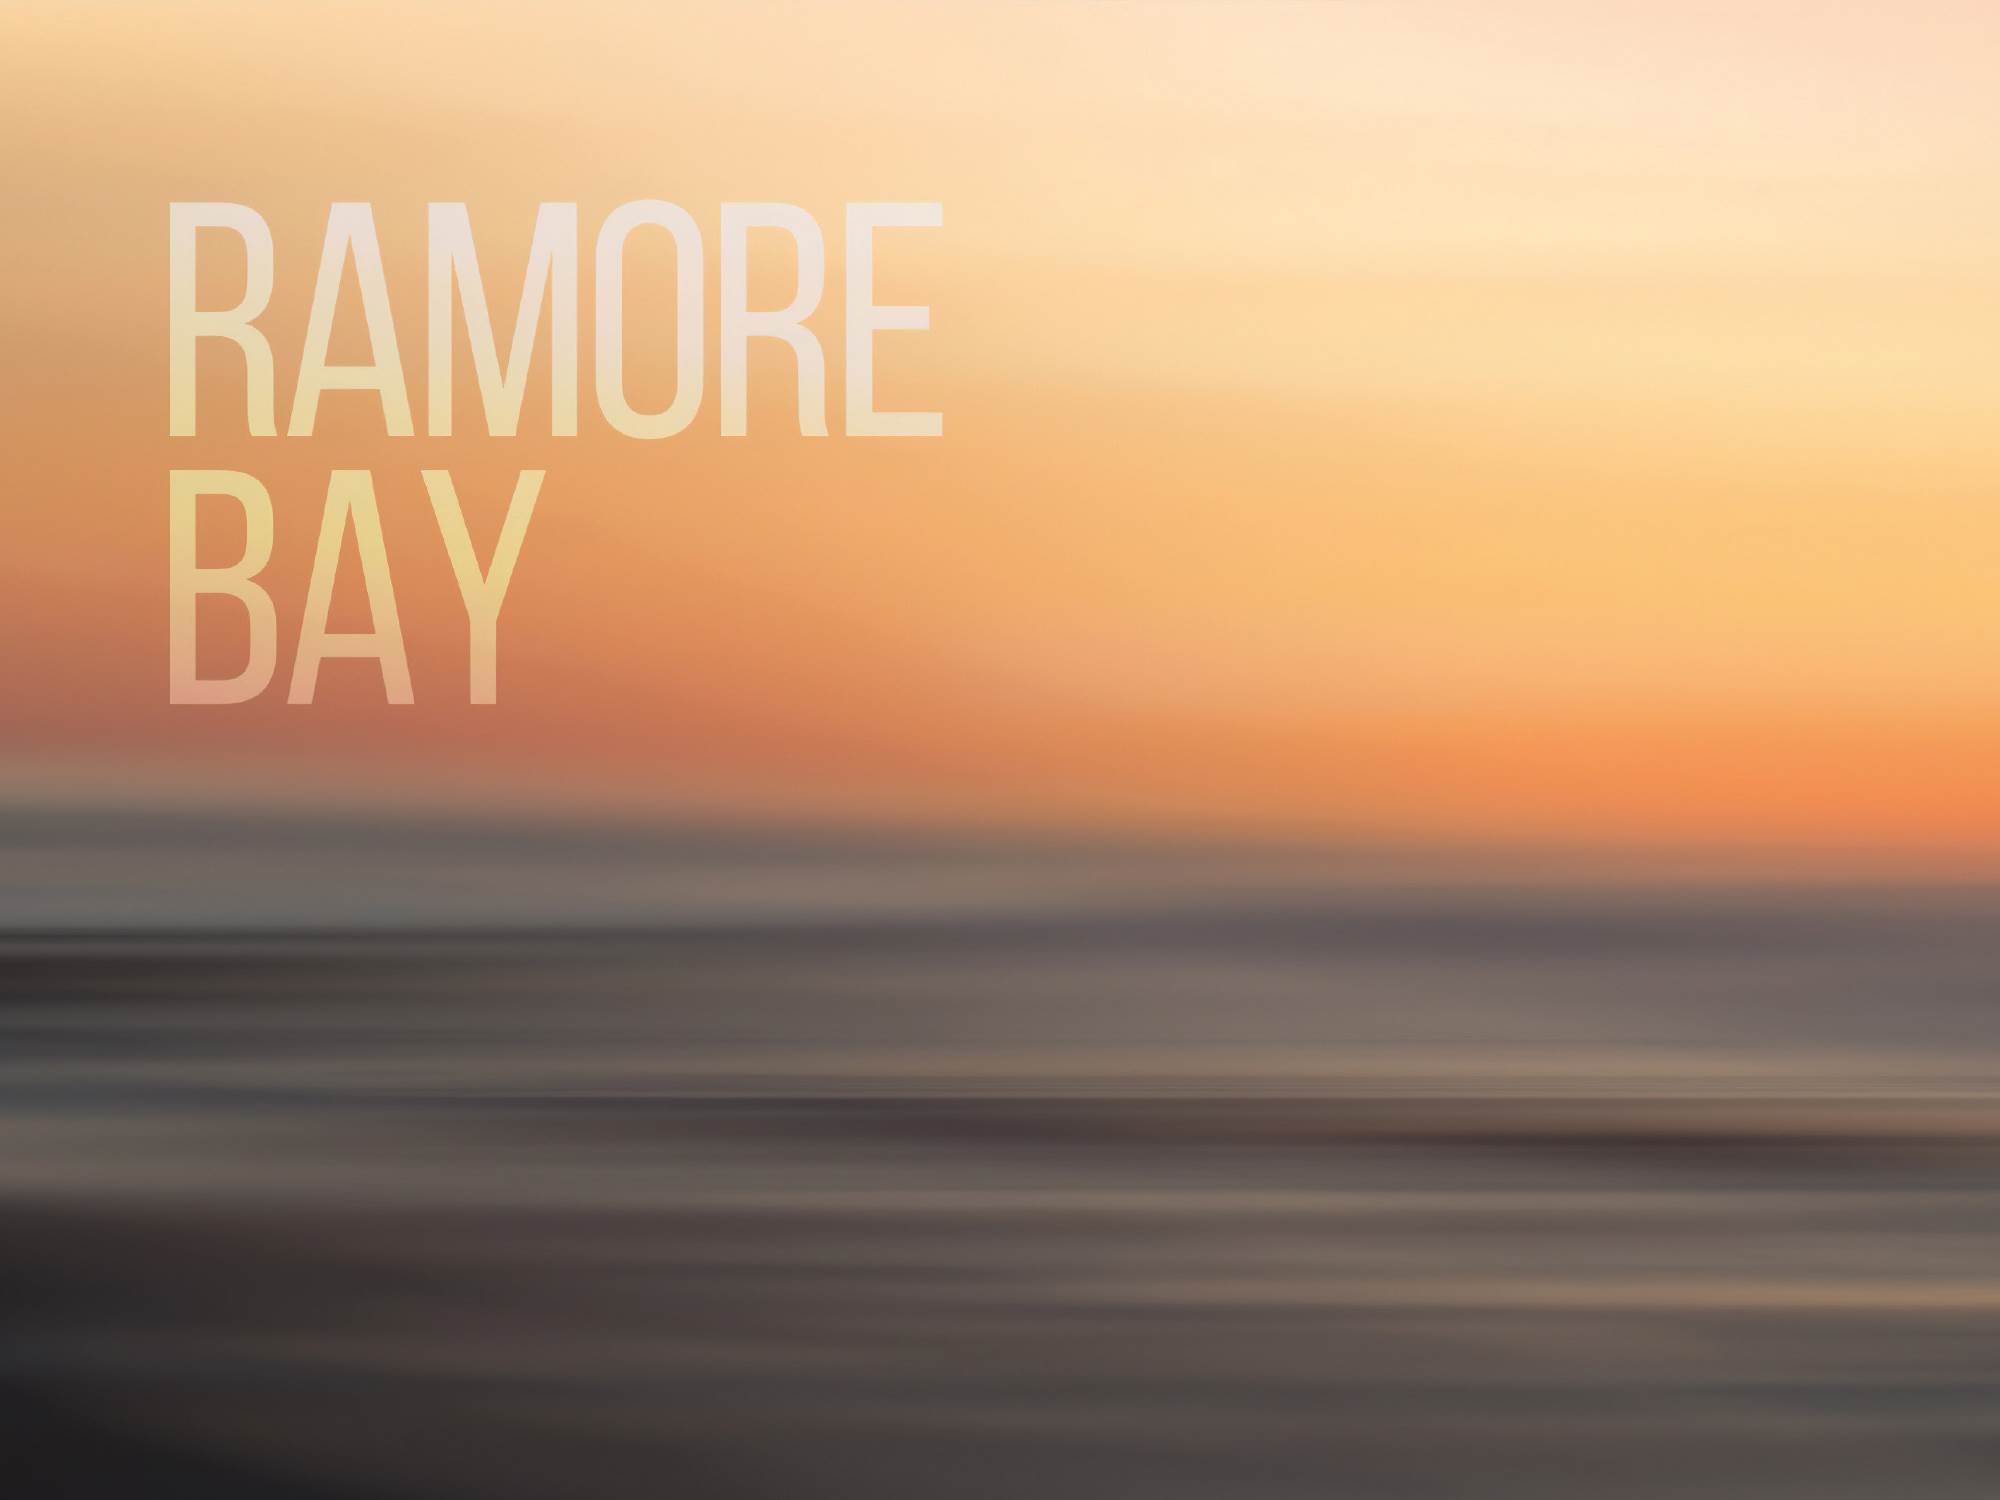 11 Ramore Bay